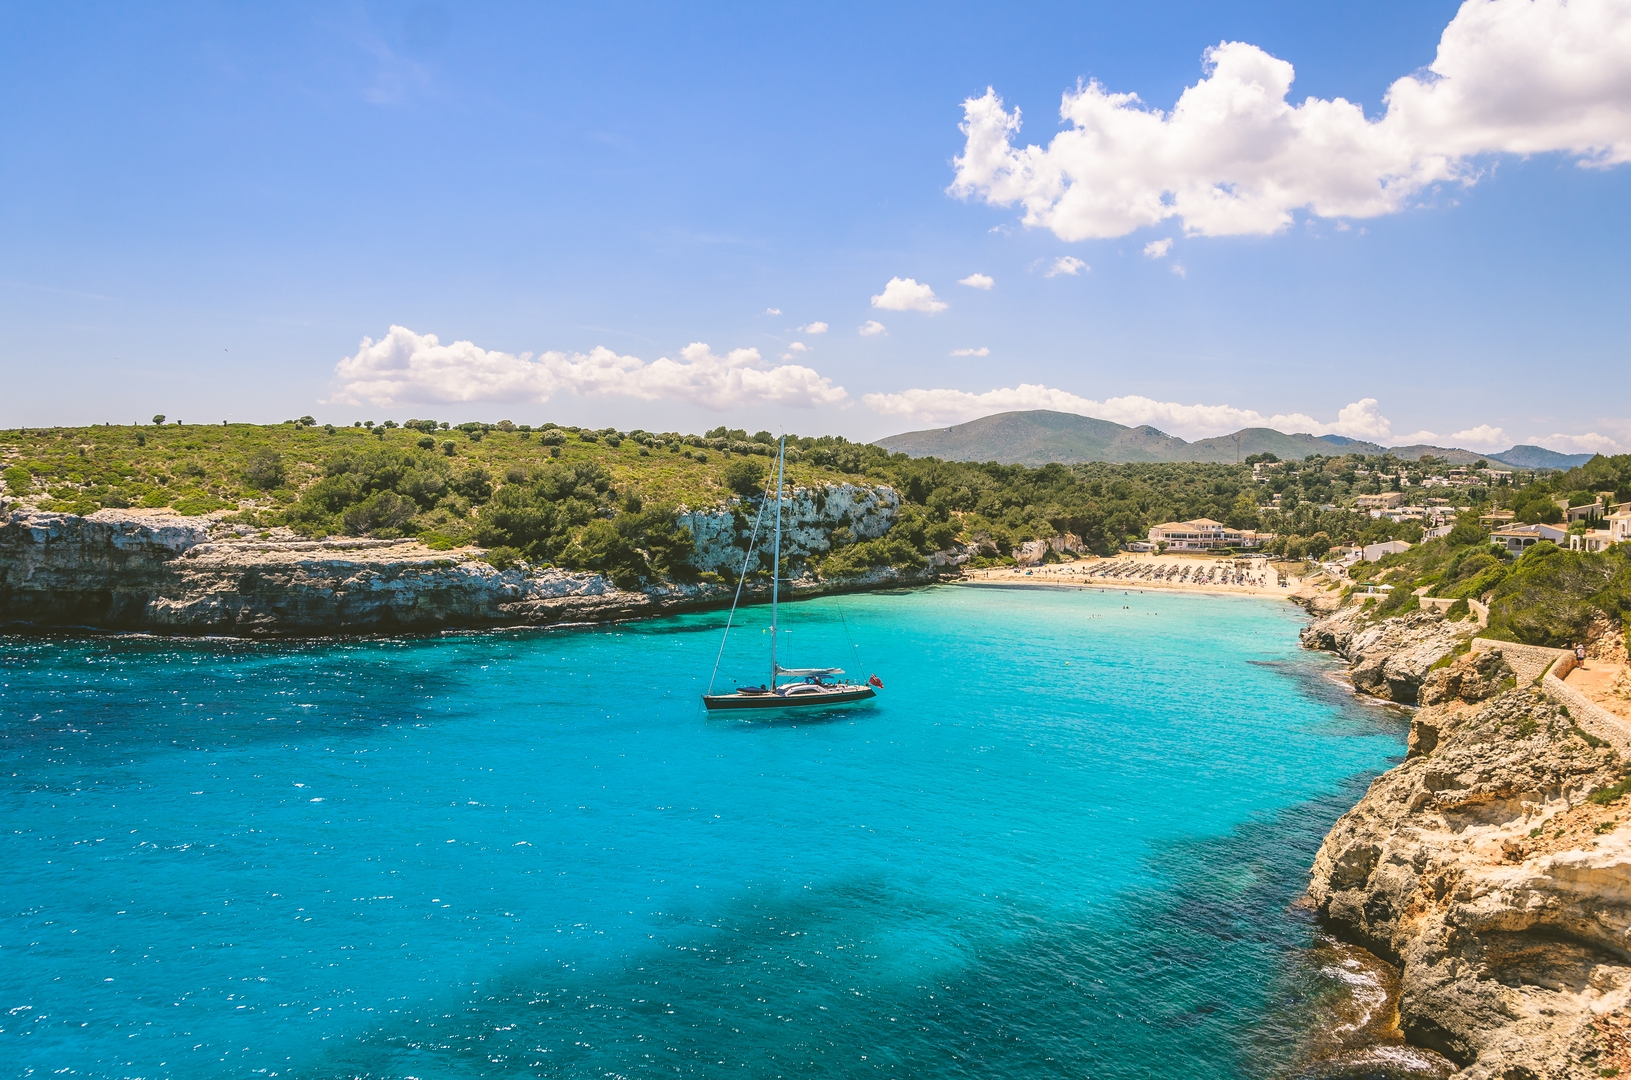 Wide view of Estany beach with a Boat, Mallorca, Palma de mallorca,  Spain